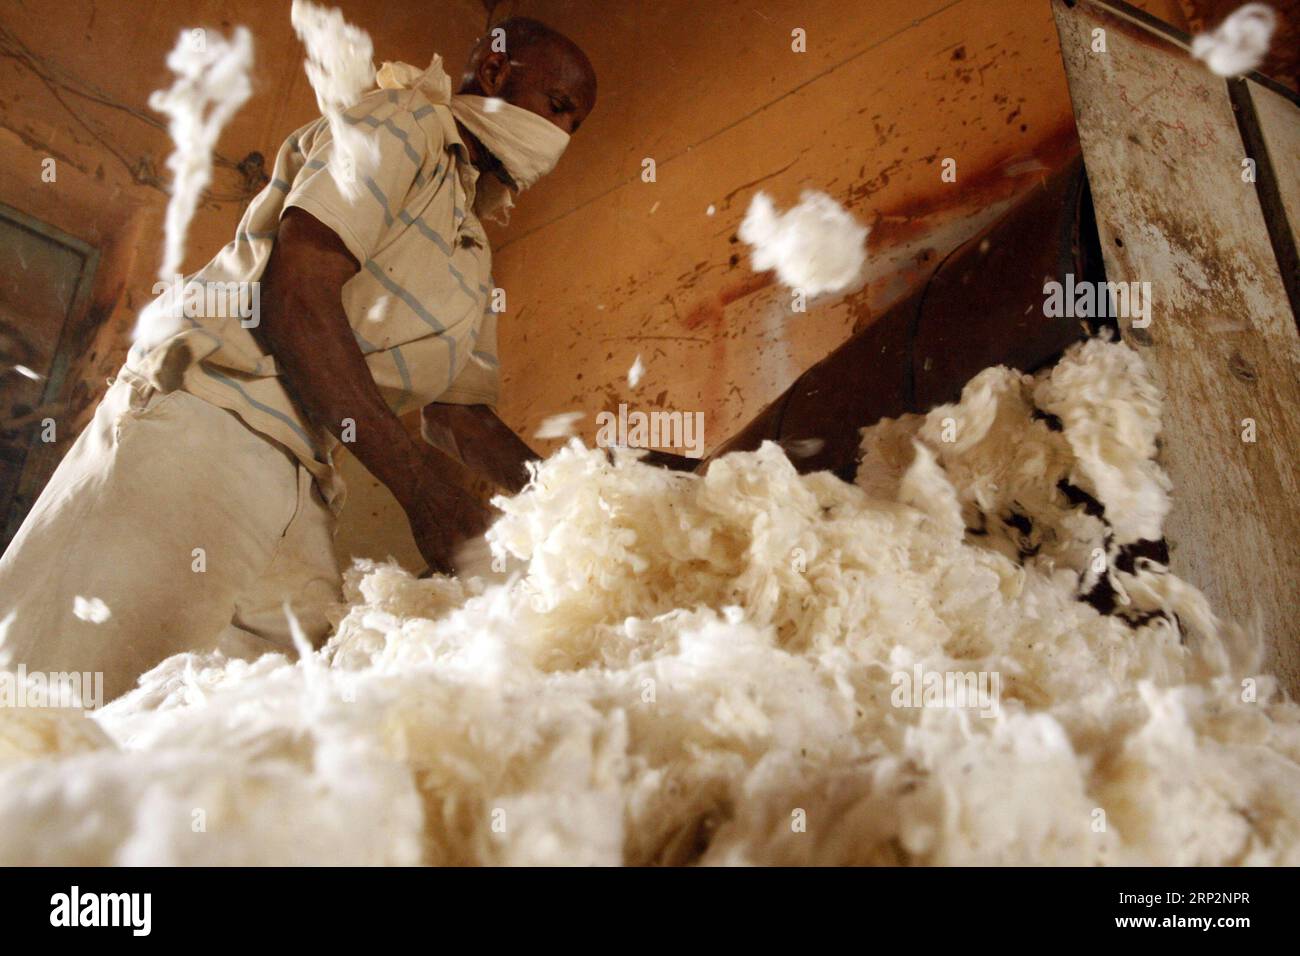 (180908) -- OMDURMAN, Sept. 8, 2018 -- A worker makes cotton bed mattresses in Omdurman, Sudan, Sept. 8, 2018. ) (yg) SUDAN-OMDURMAN-HAND MAKING-MATTRESS MohamedxKhidir PUBLICATIONxNOTxINxCHN Stock Photo